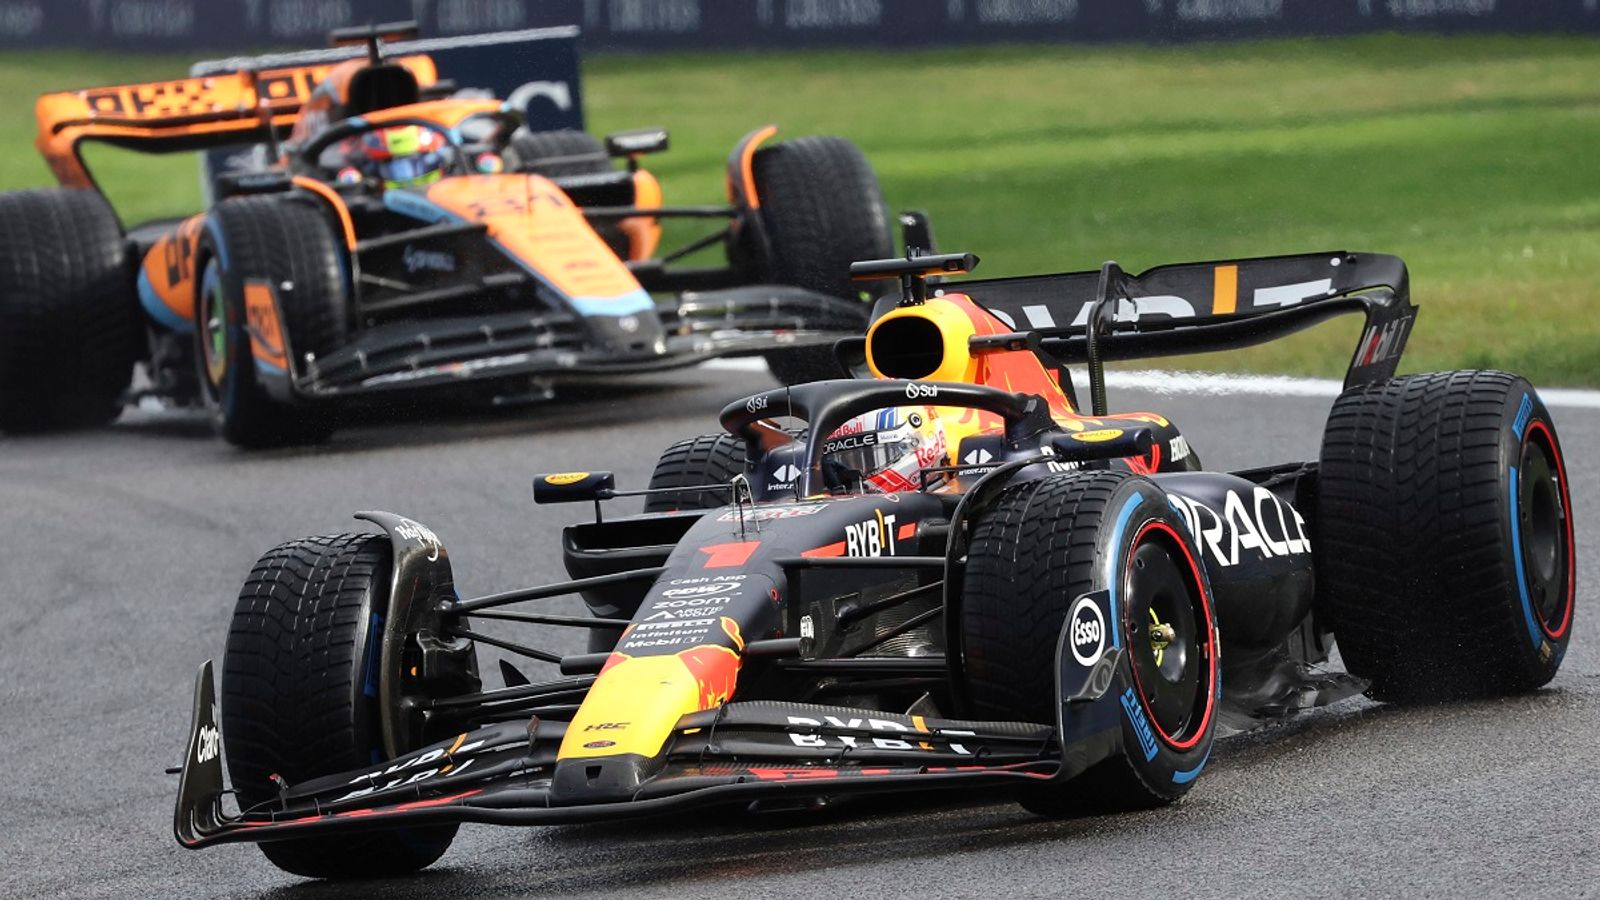 Formel 1 Liveticker Der Sprint and das Qualifying in Spa-Francorchamps im Liveblog Formel 1 News Sky Sport